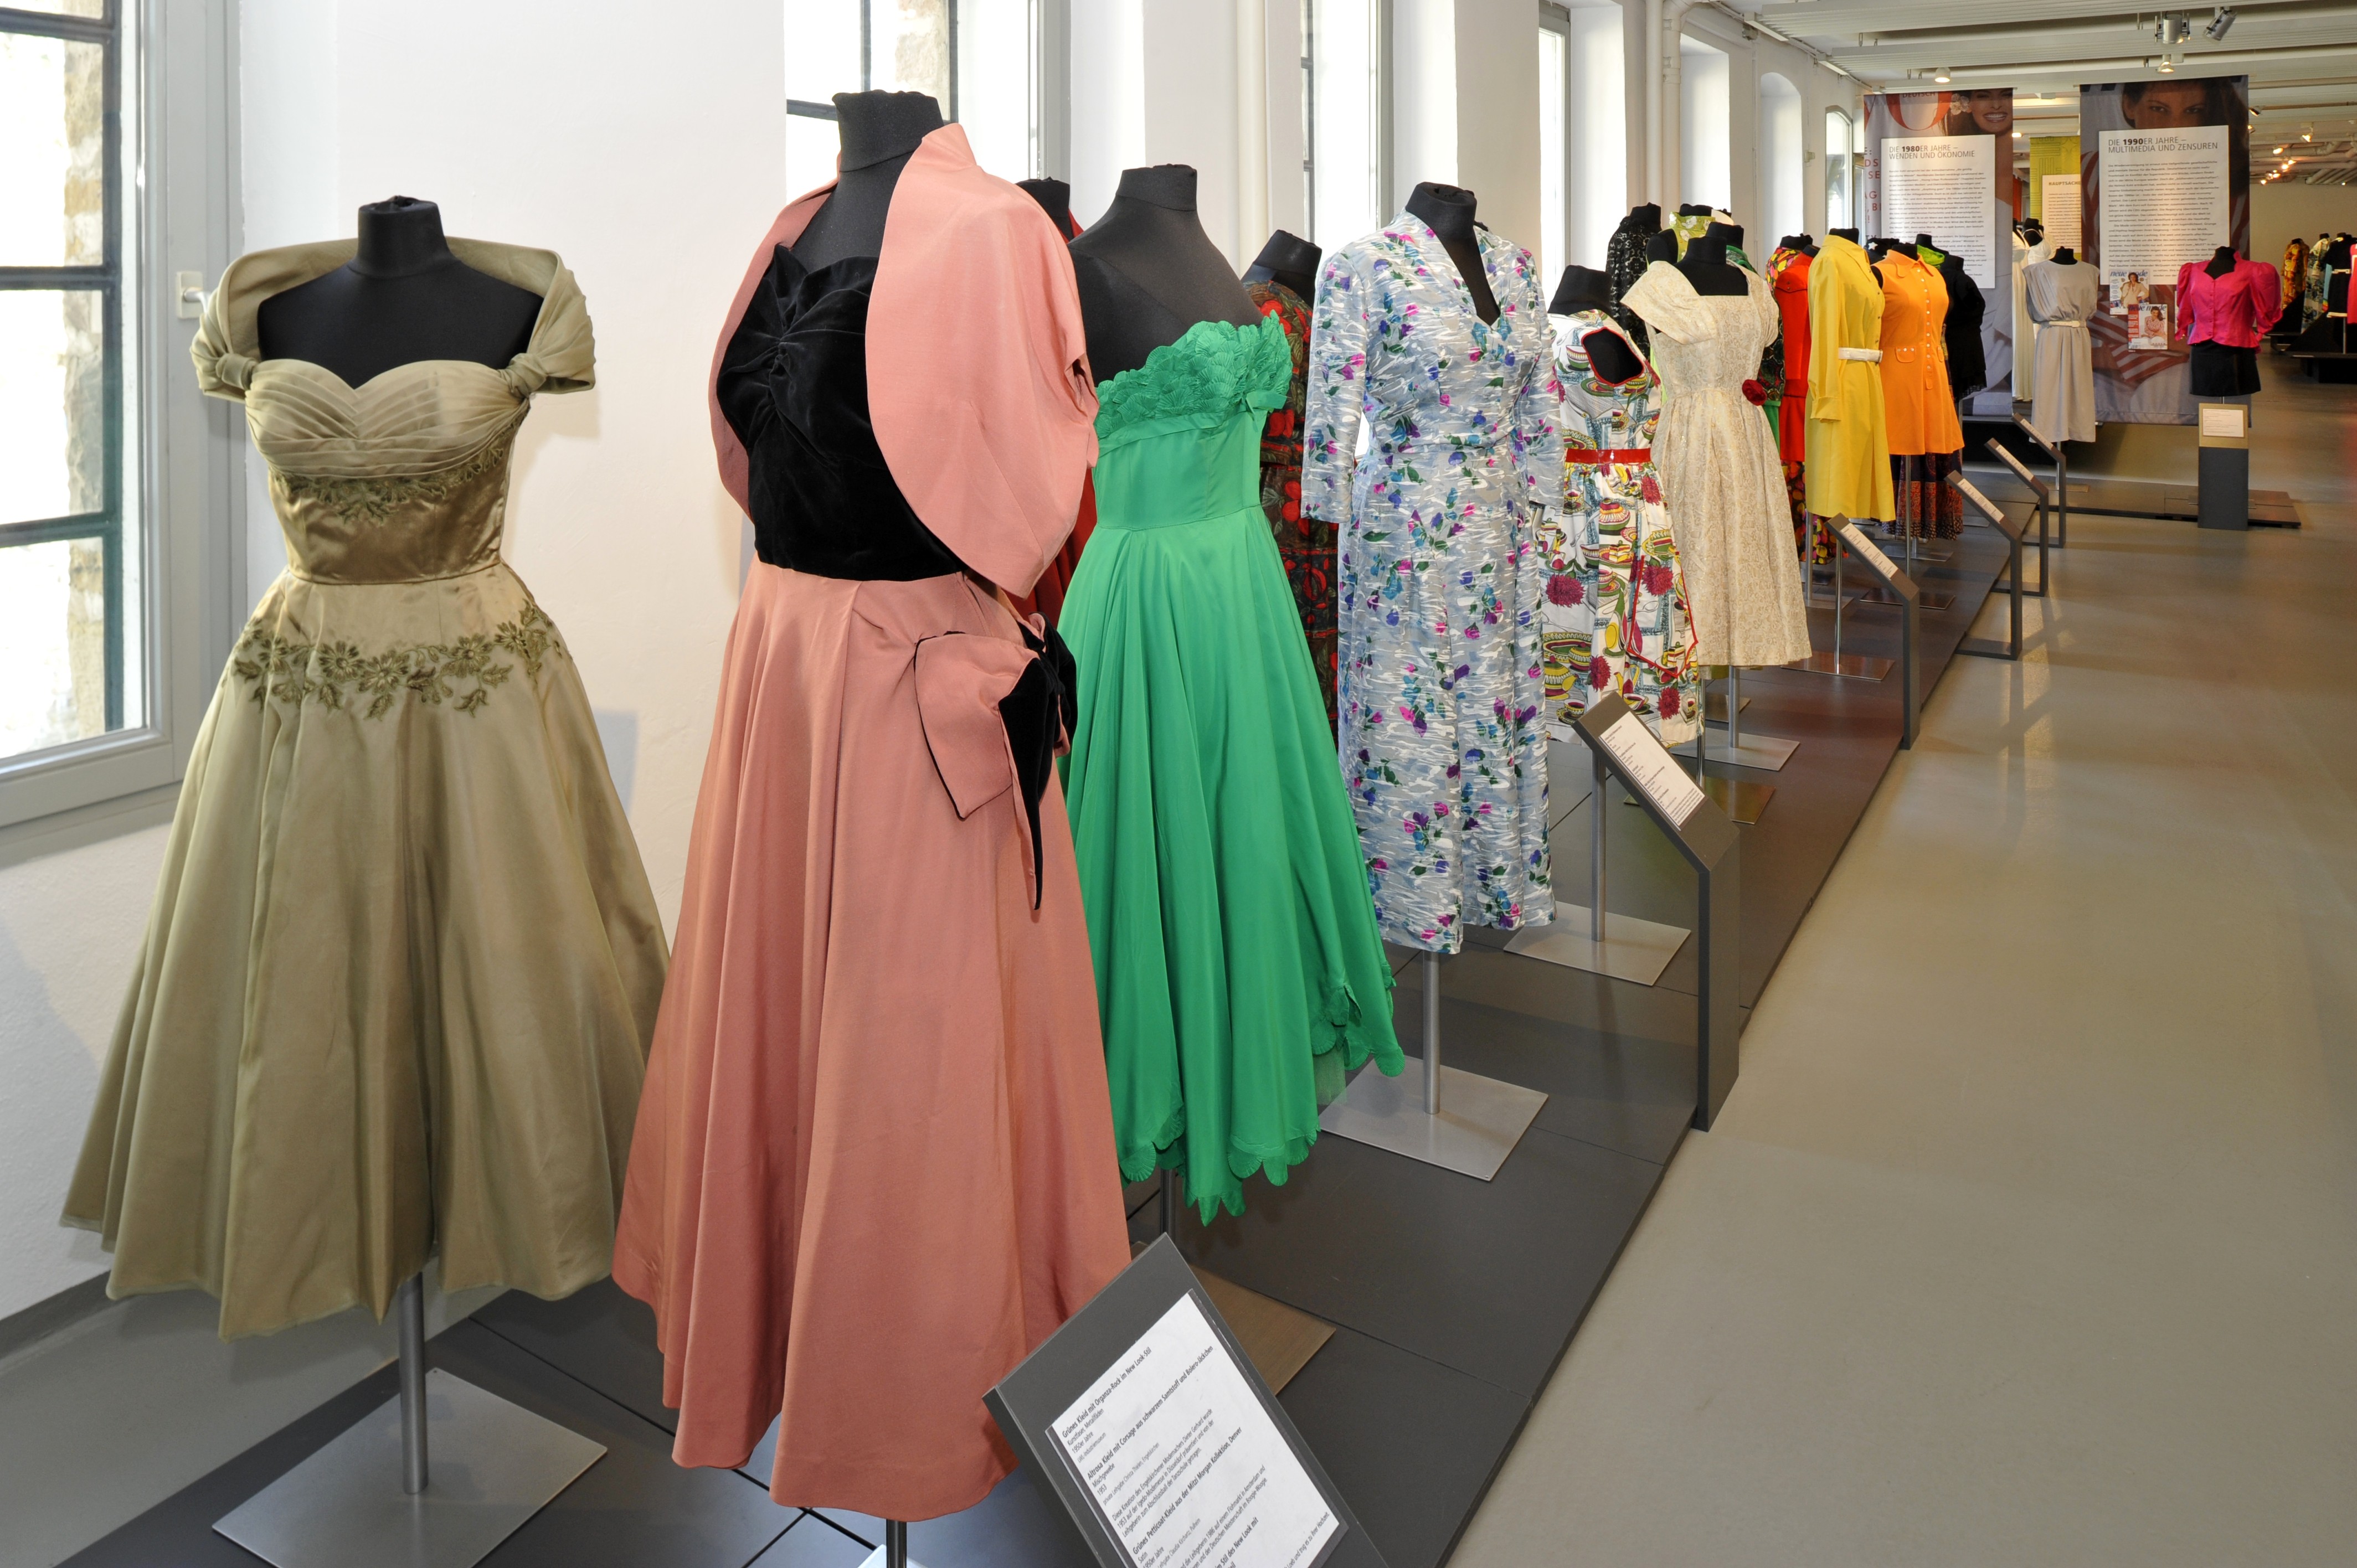 Auf dem „Laufsteg der Epochen“ präsentiert die Ausstellung Outfits aus fünf Jahrzehnten. Erzählt werden hierbei auch ganz persönliche Geschichten, die mit den Kleidungsstücken verbunden sind.